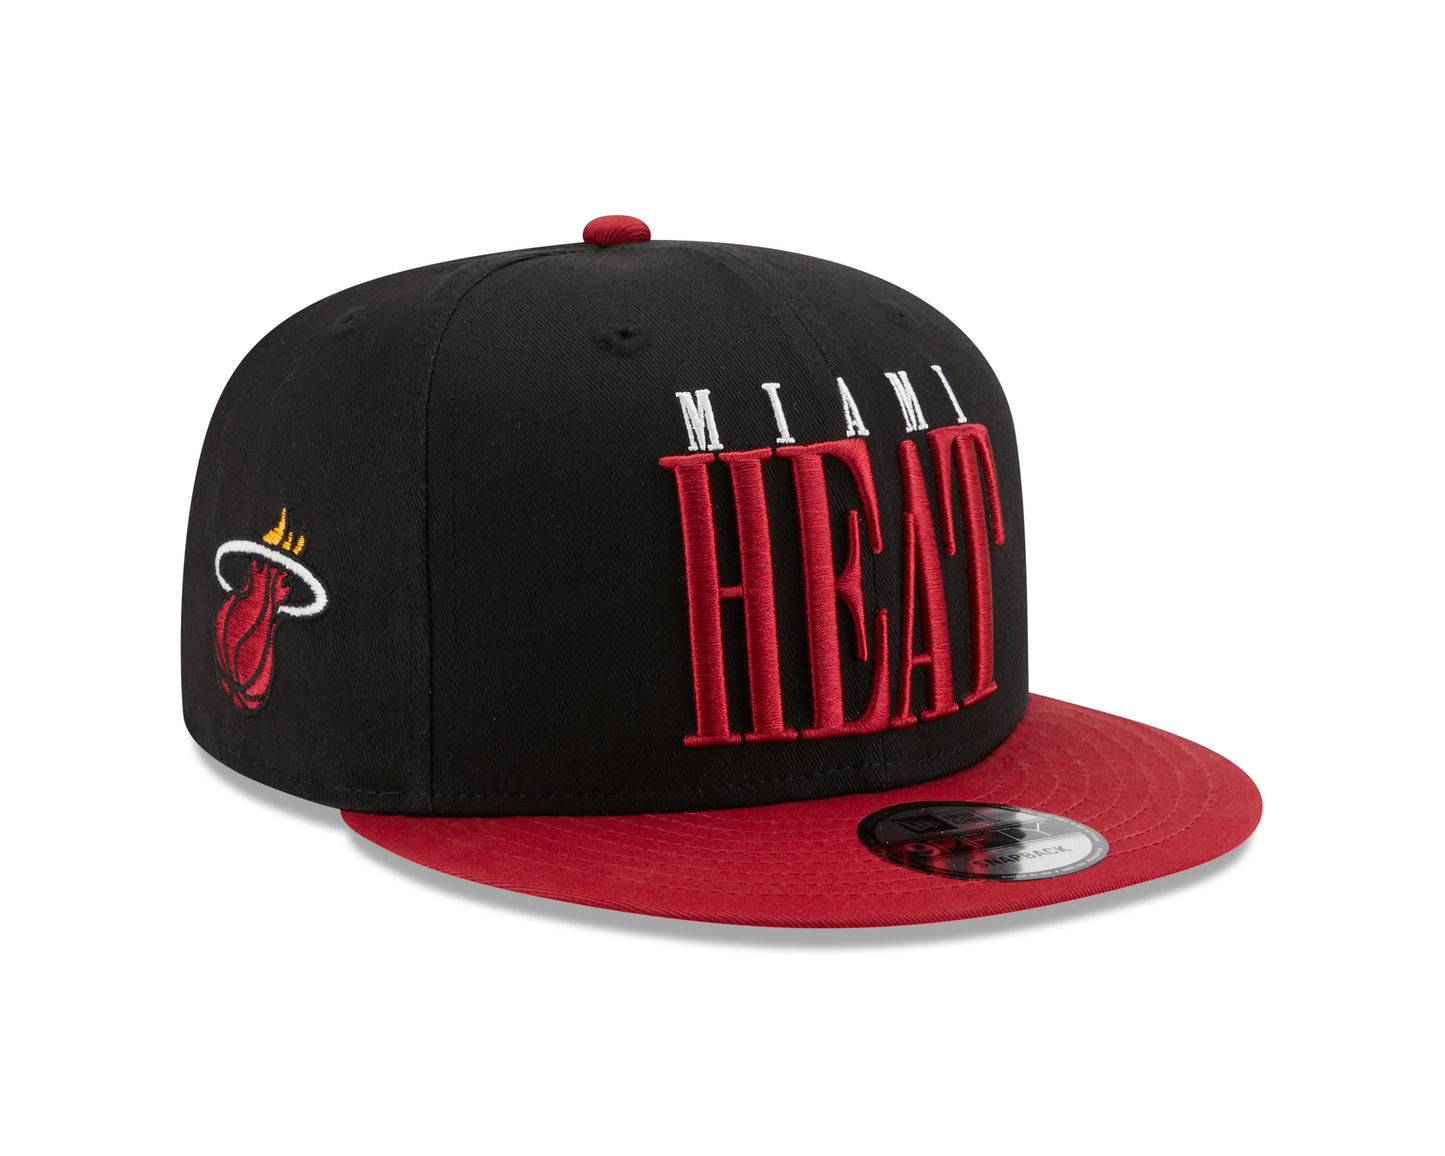 Miami Heat NBA New Era Team Title 9Fifty Snapback Hat - Black / Red